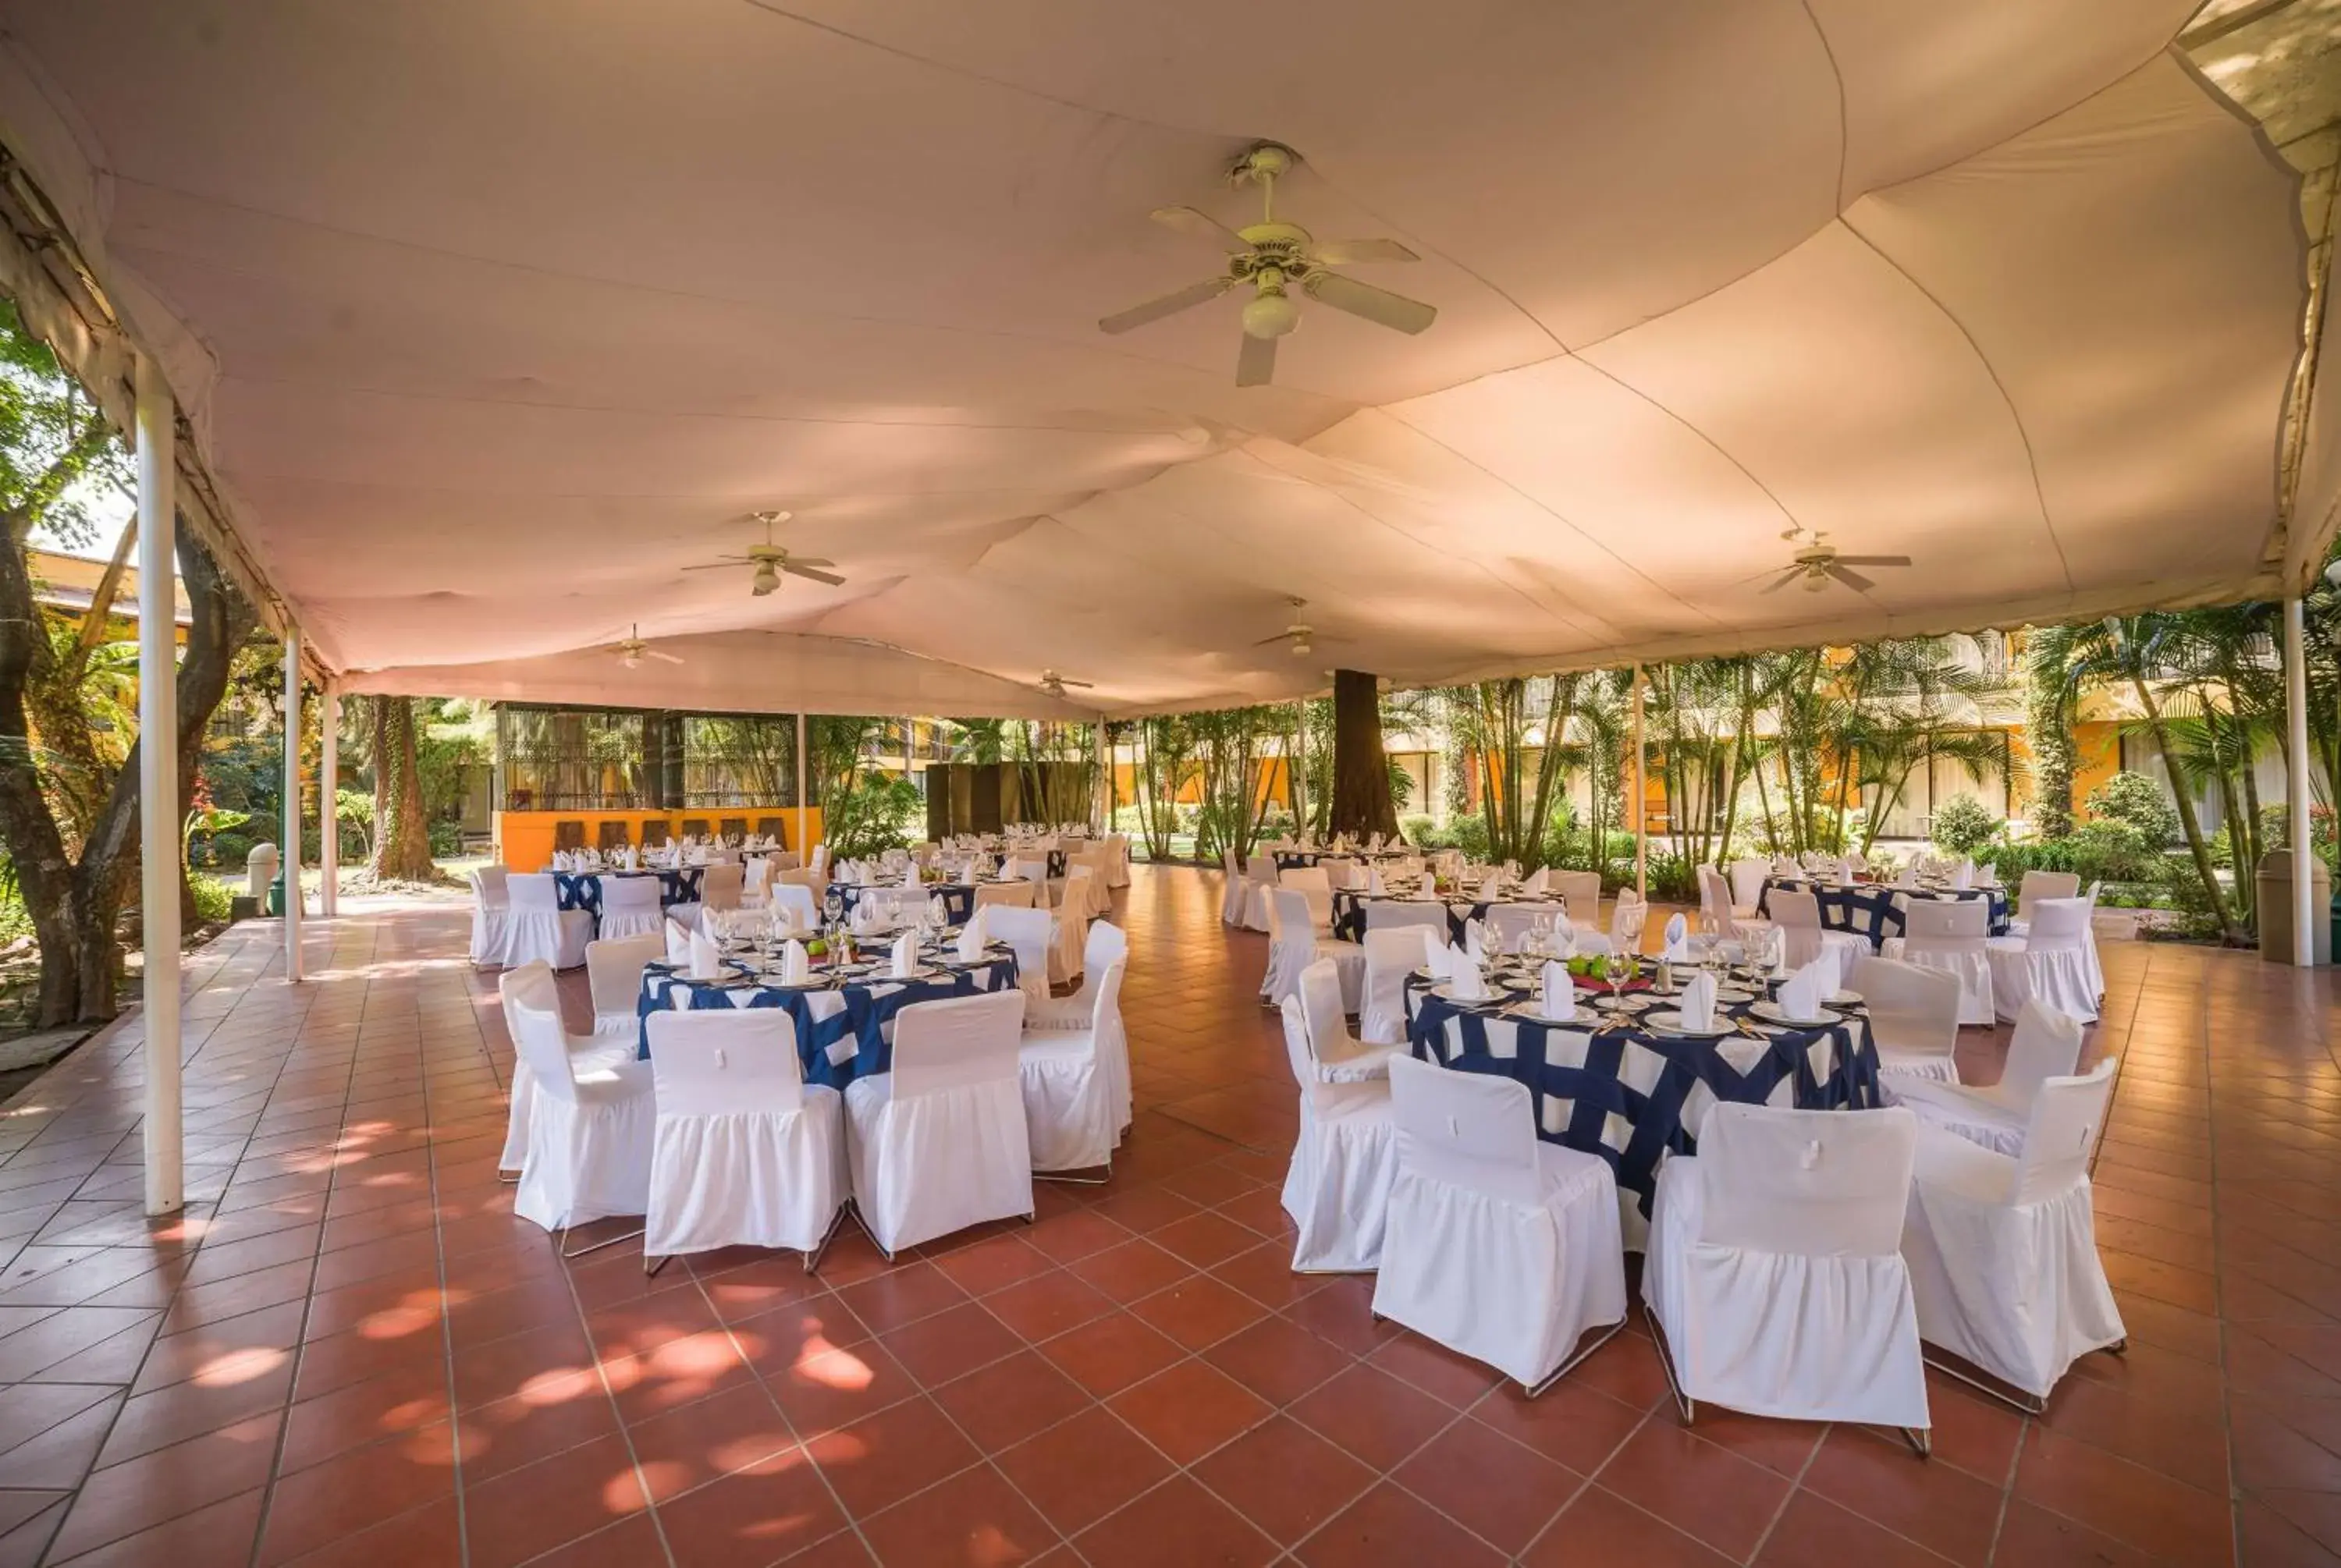 On site, Banquet Facilities in Wyndham Garden Guadalajara Expo Plaza del Sol